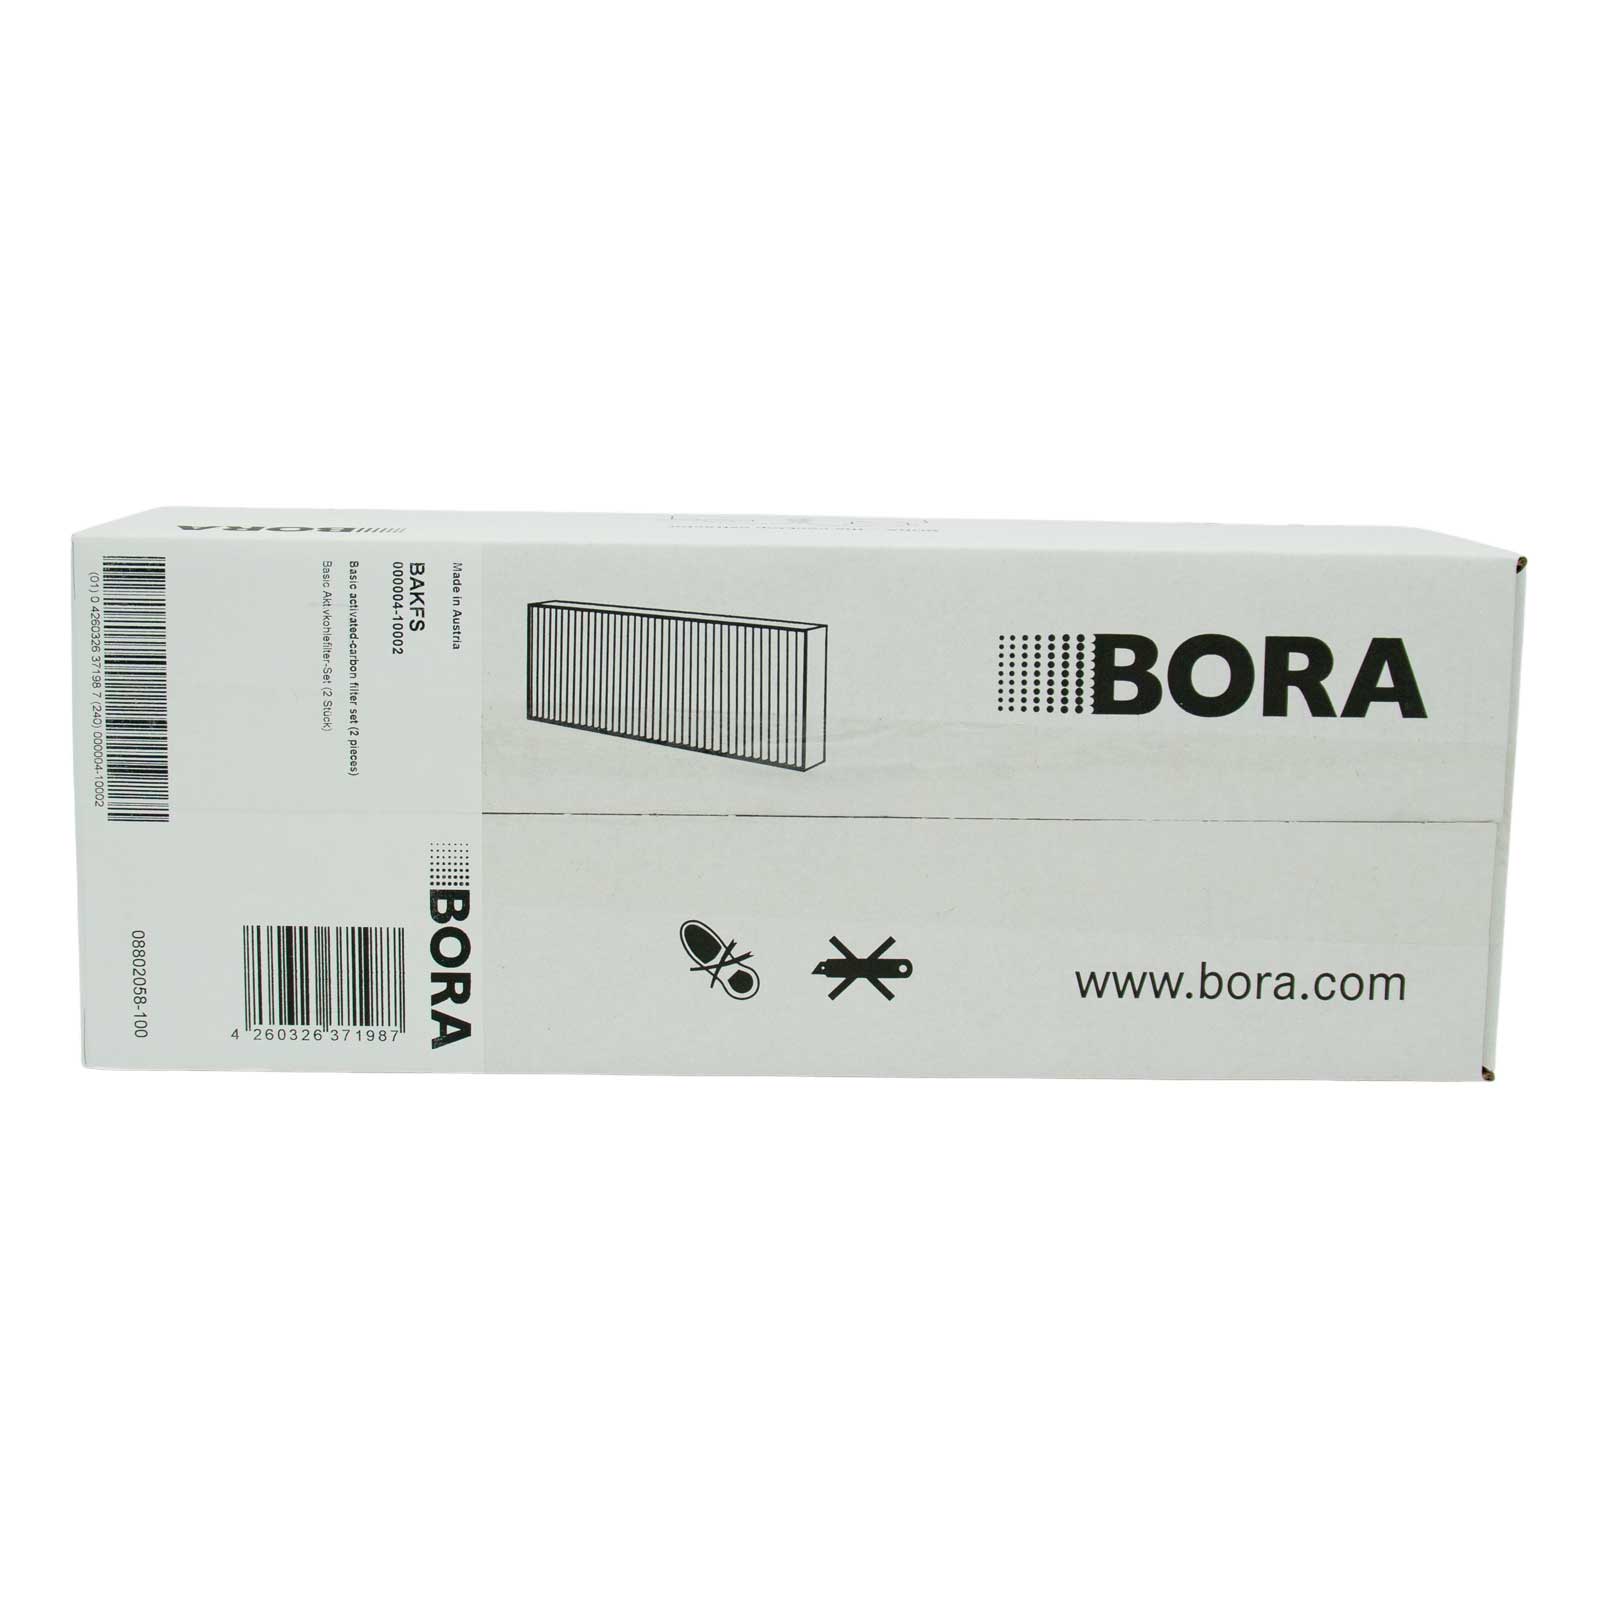 Bora Pure Actief Koolstof Filter (PUAKF)